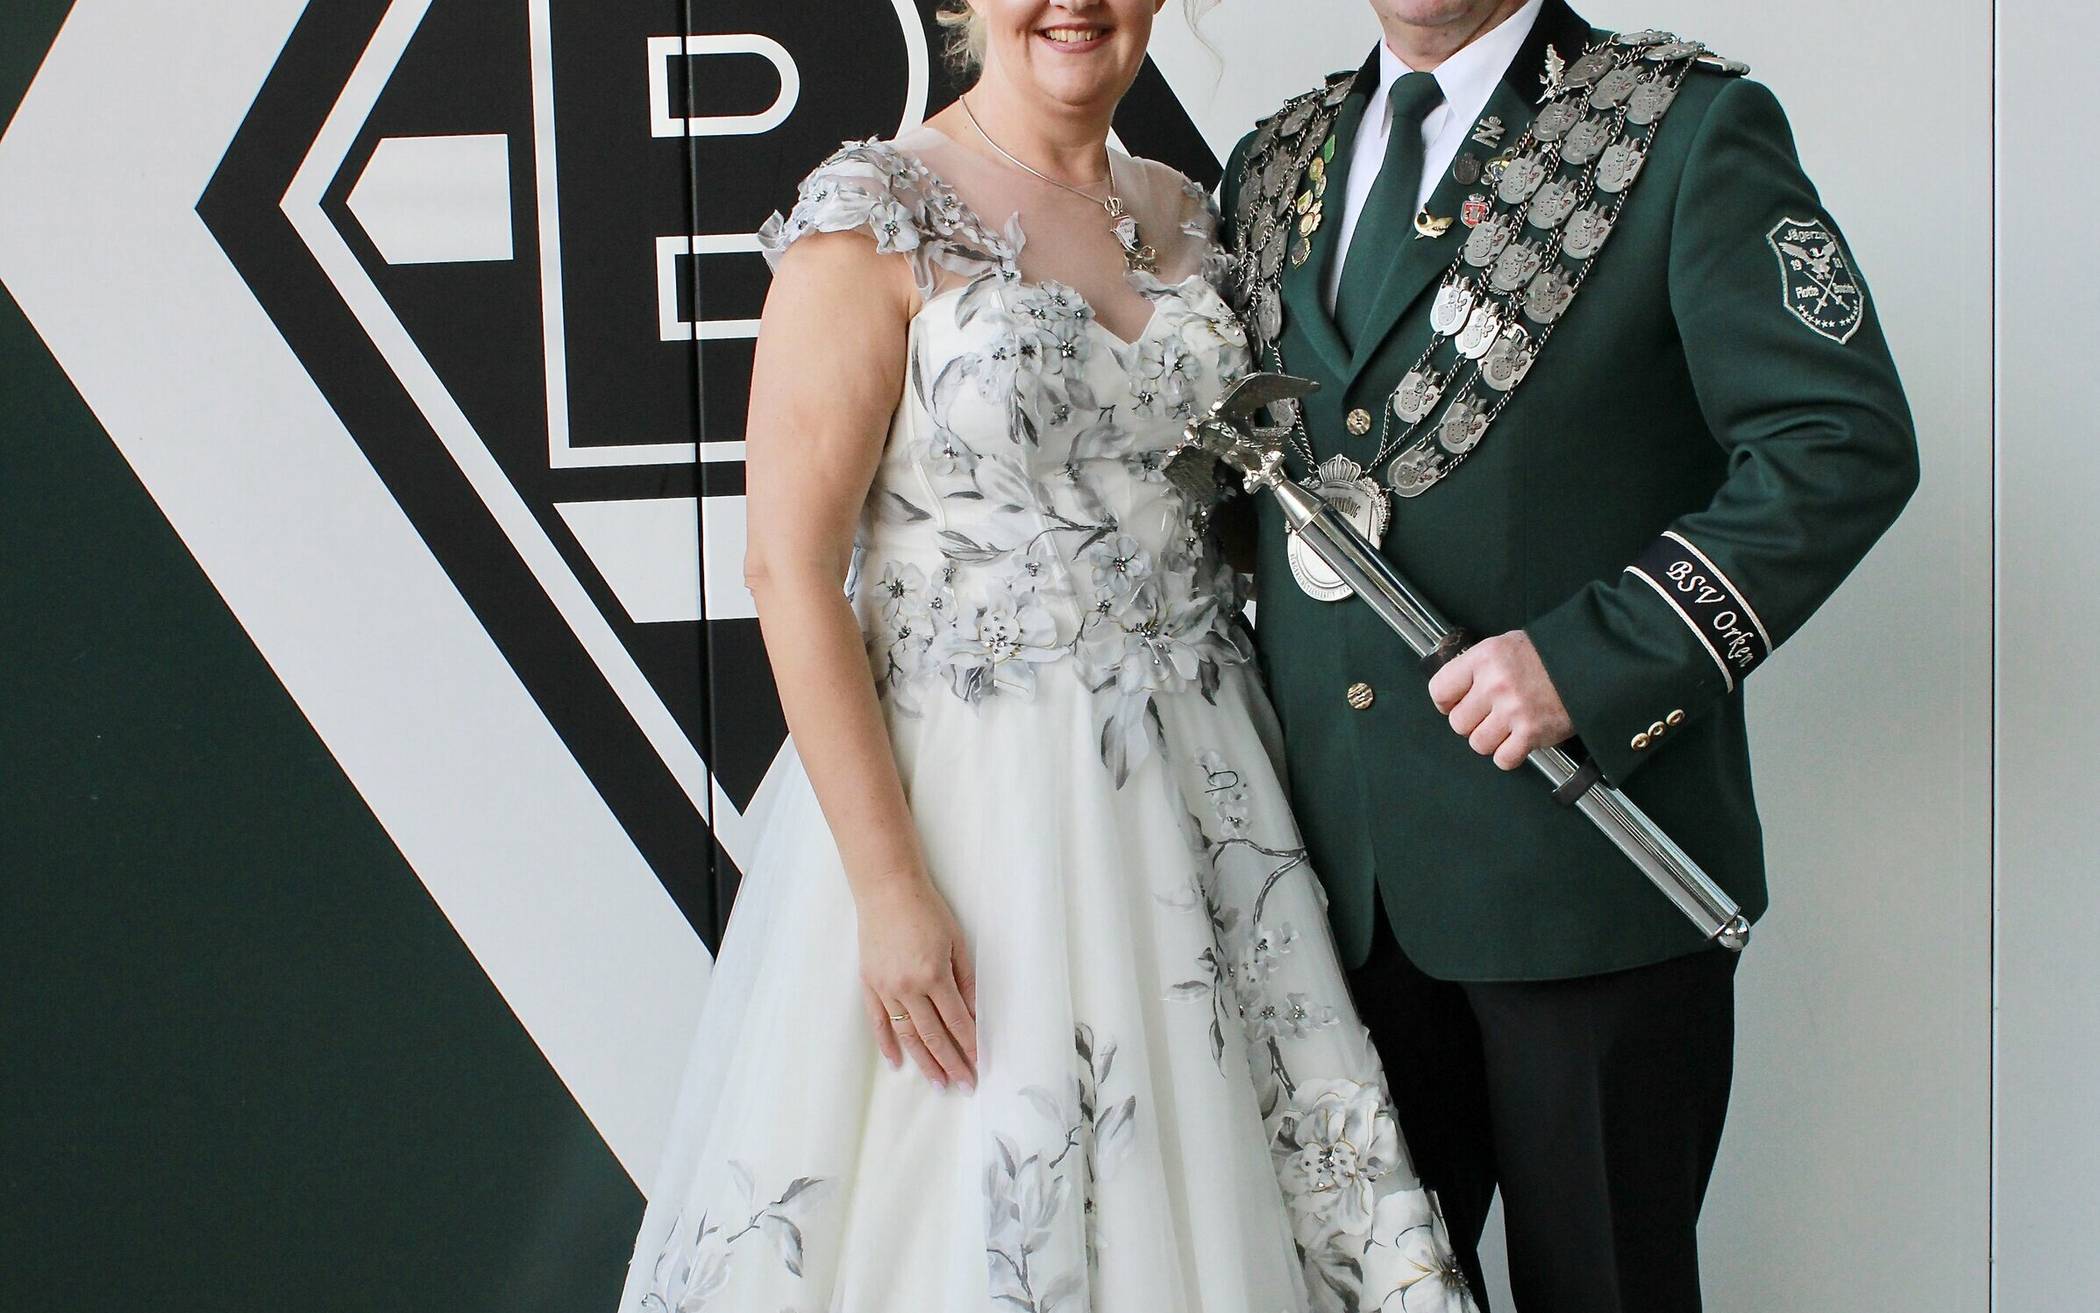  Jörg und Stephanie Zimmermann repräsentieren die Orkener Schützen seit drei Jahren. 